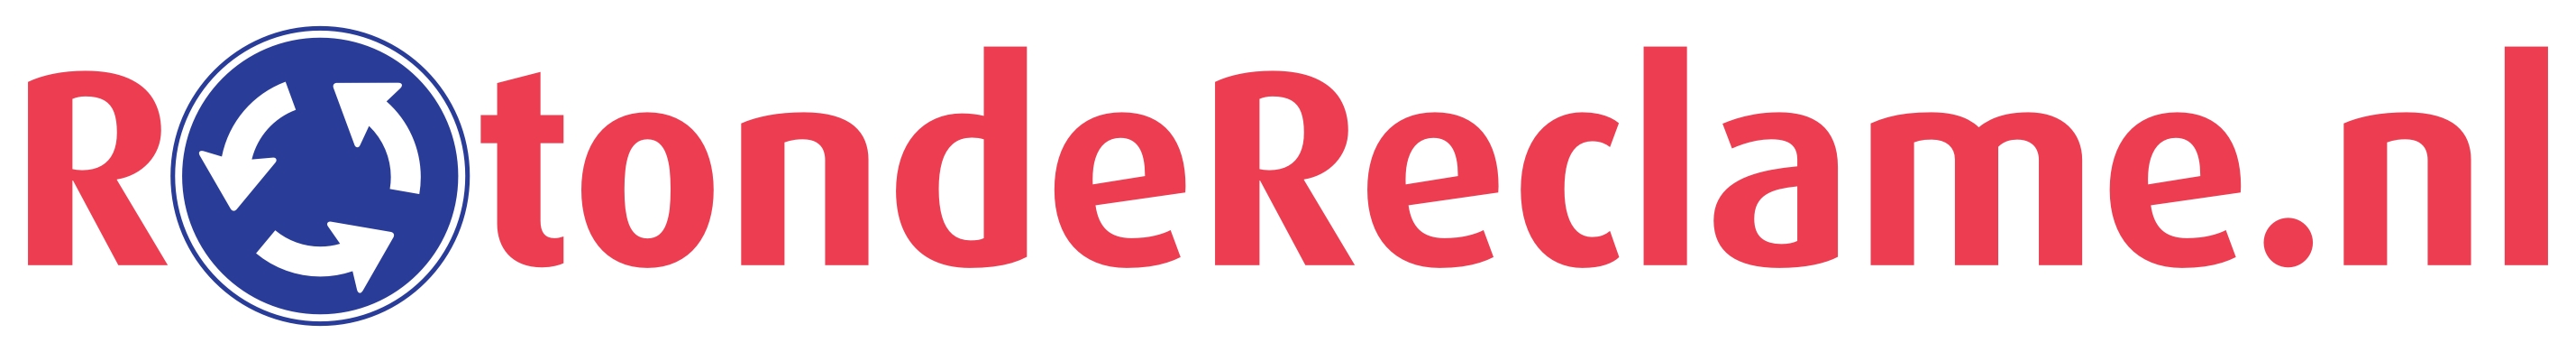 RotondeReclame - Logo